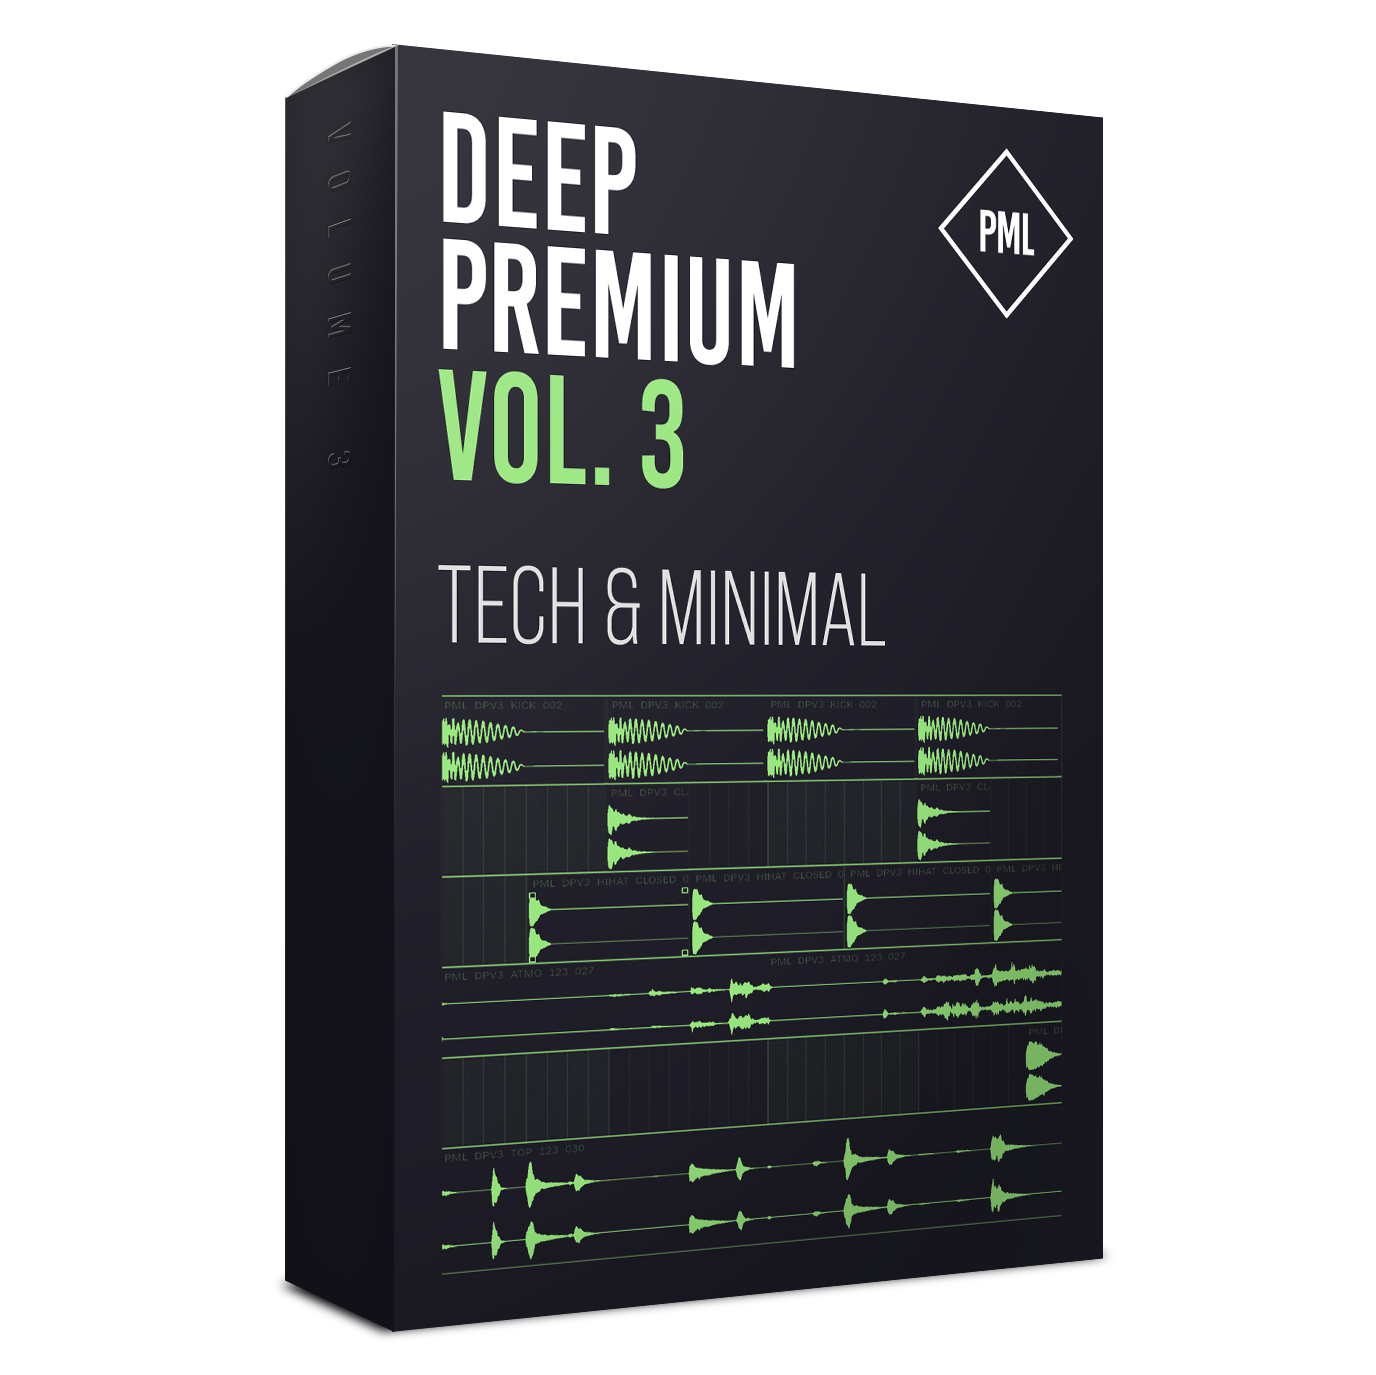 Deep Premium Vol.3 - Drum Sample Pack